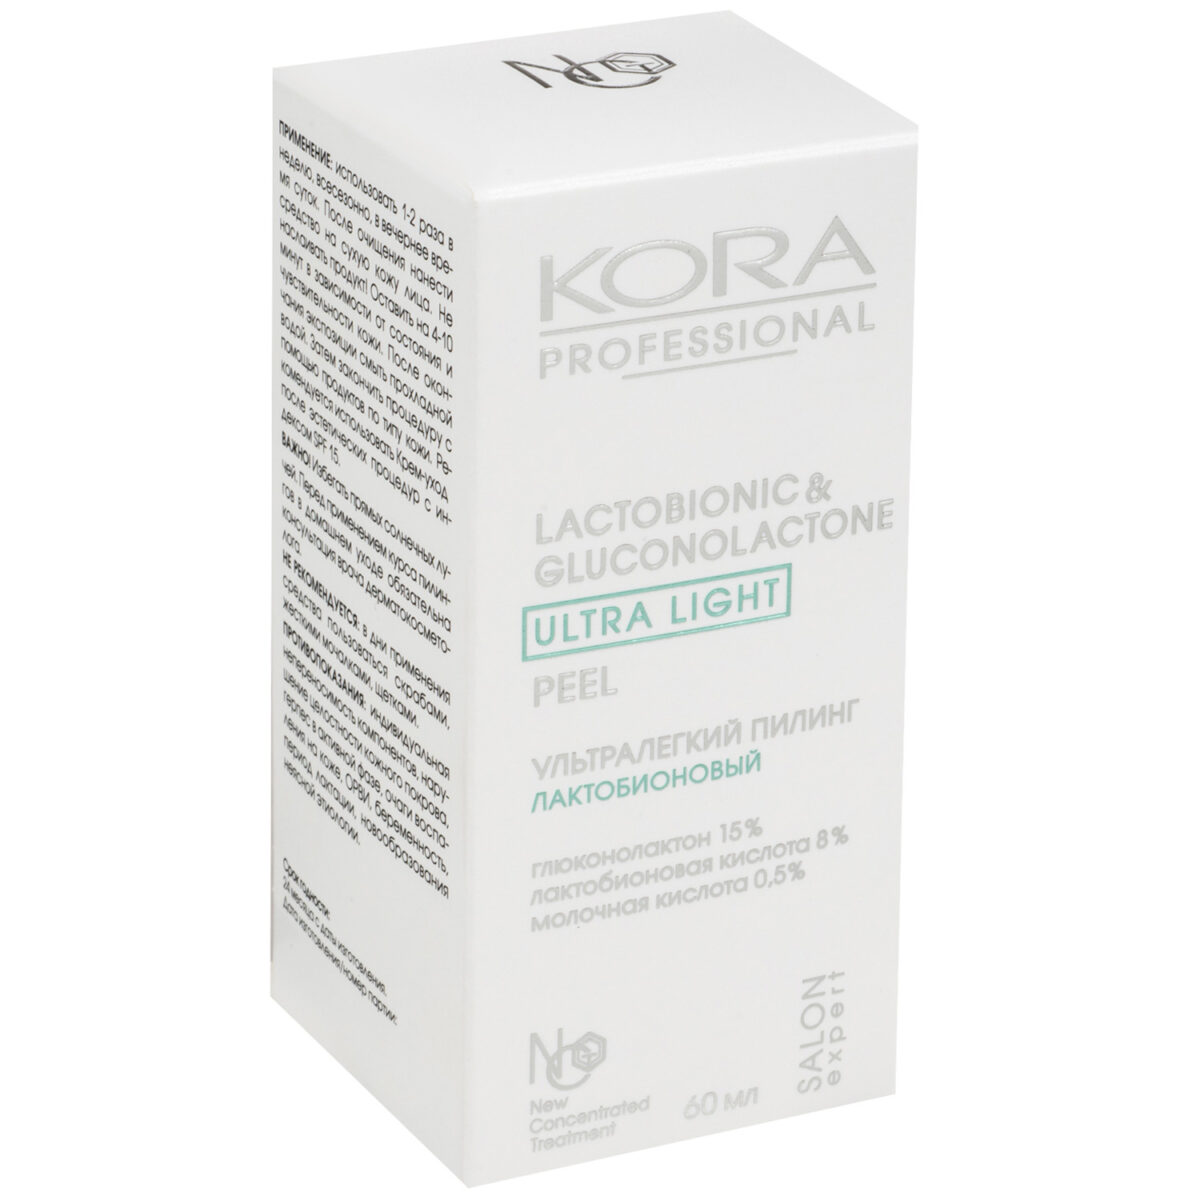 Ультралегкий лактобионовый пилинг для всех типов кожи 60 мл KORA 47844